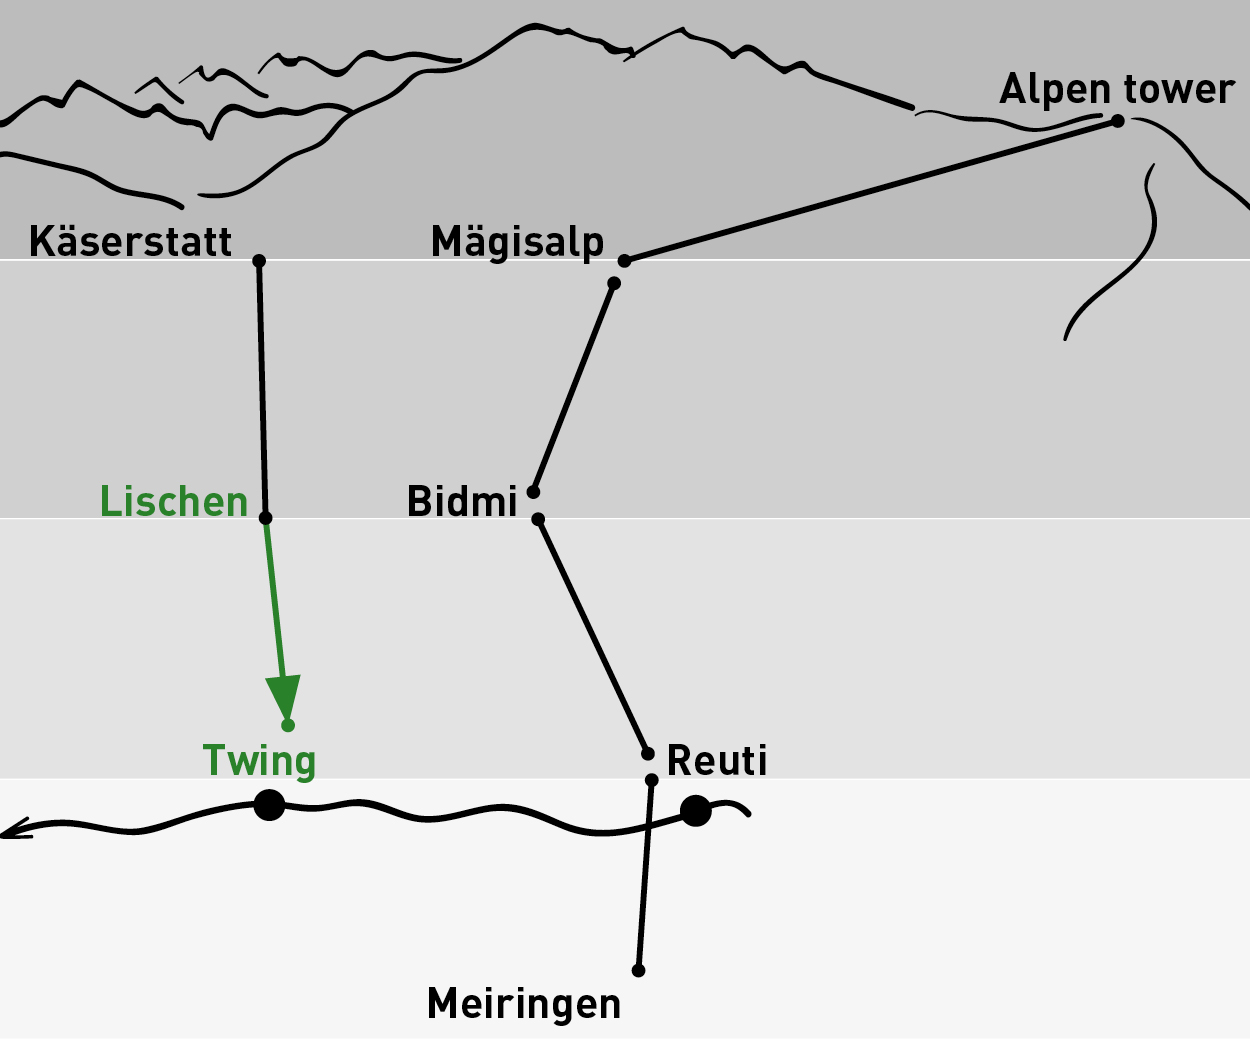 Lischen - Twing | One-way trip